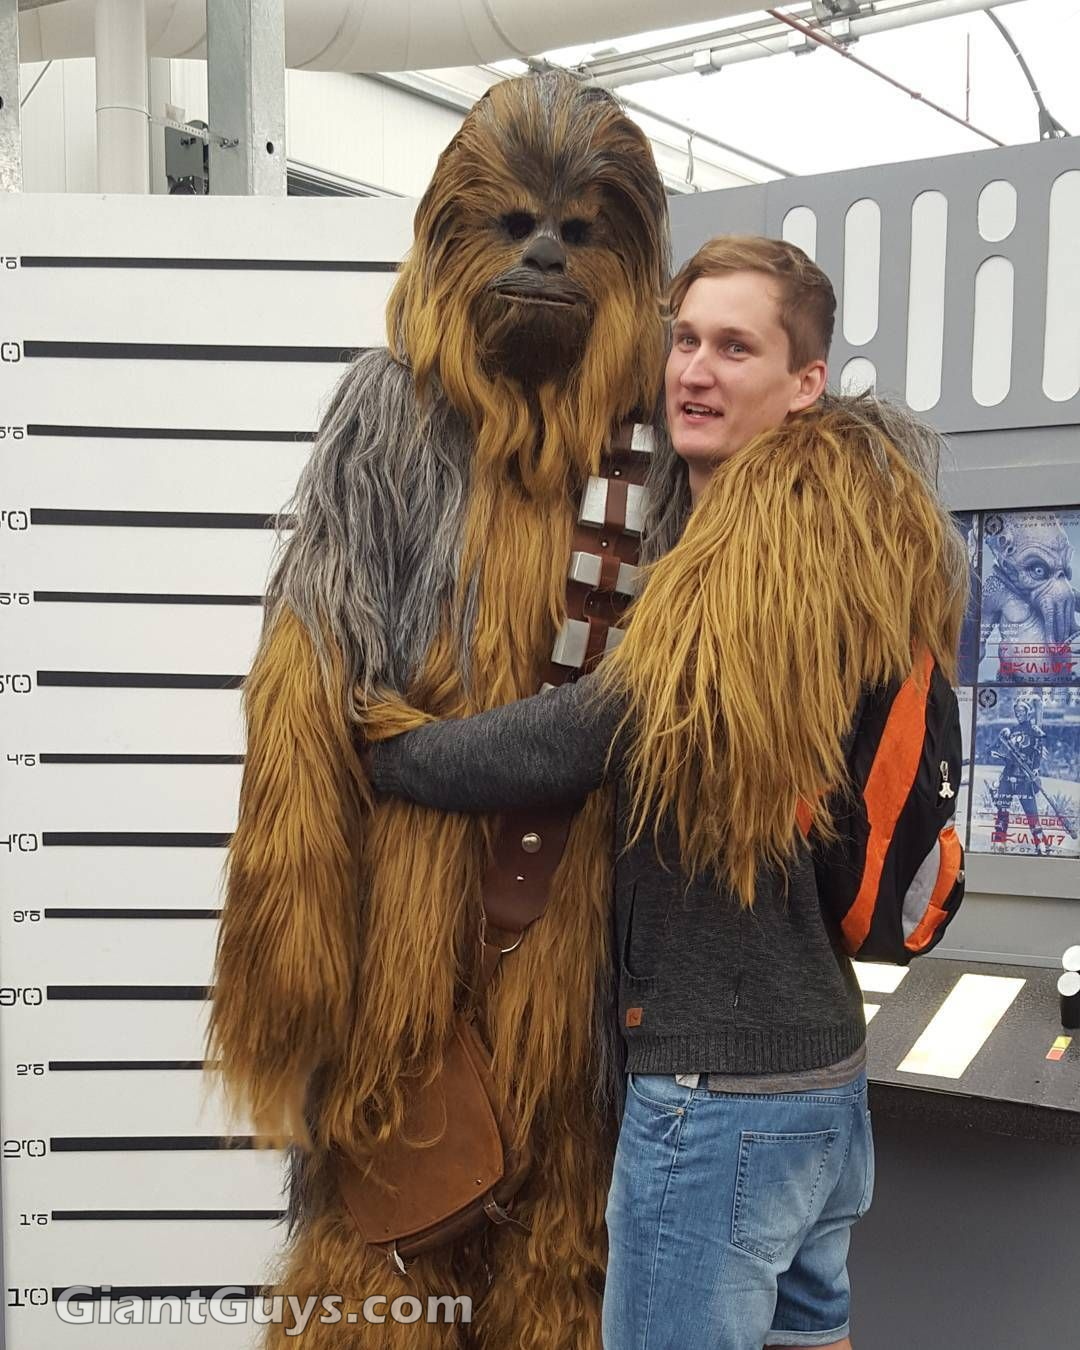 Josh Sambo with Chewbacca